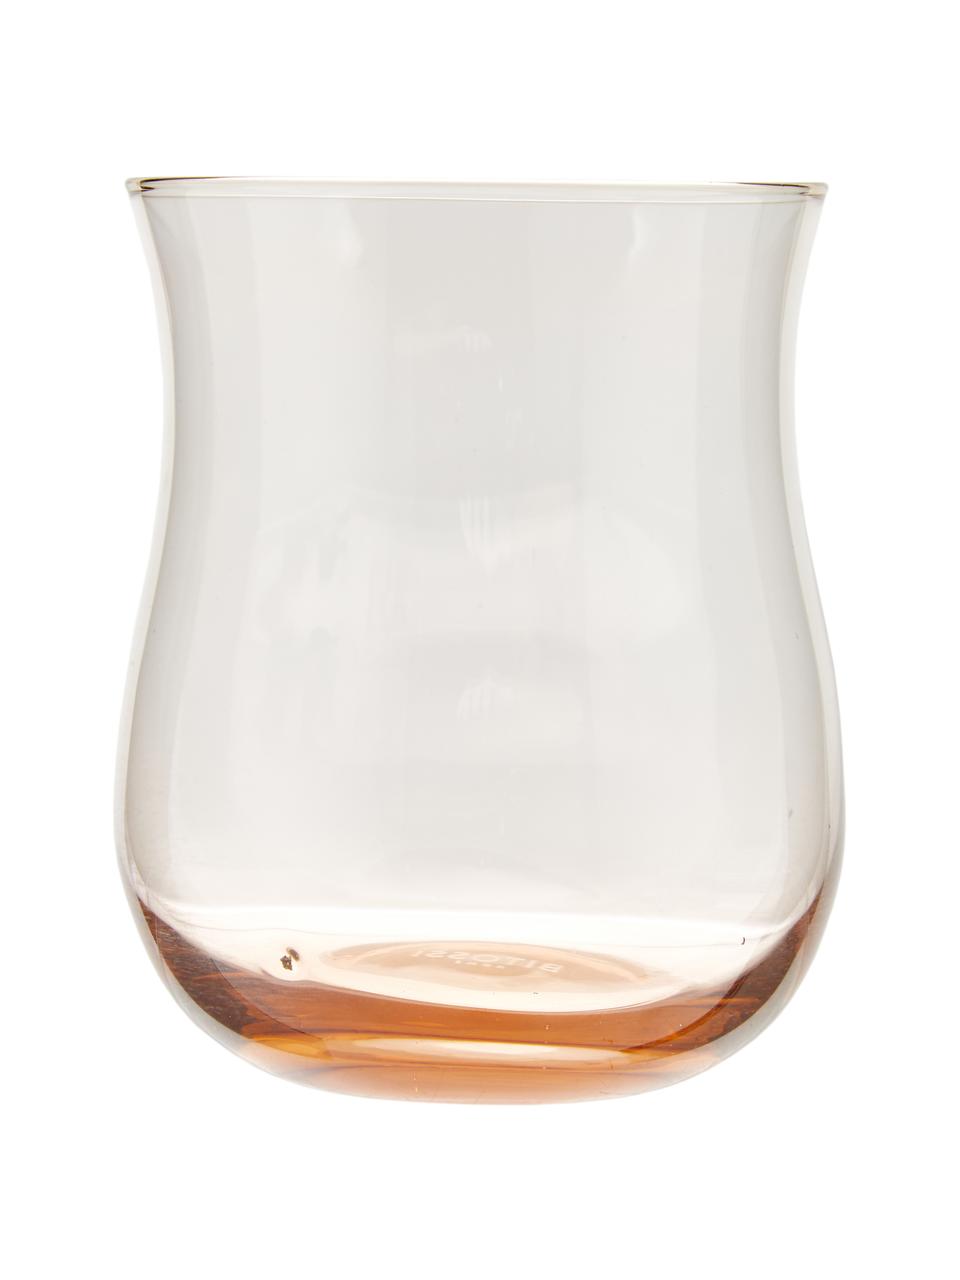 Mundgeblasene Wassergläser Diseguale in unterschiedlichen Farben und Formen, 6er-Set, Glas, mundgeblasen, Bunt, Ø 8 x H 10 cm, 200 ml